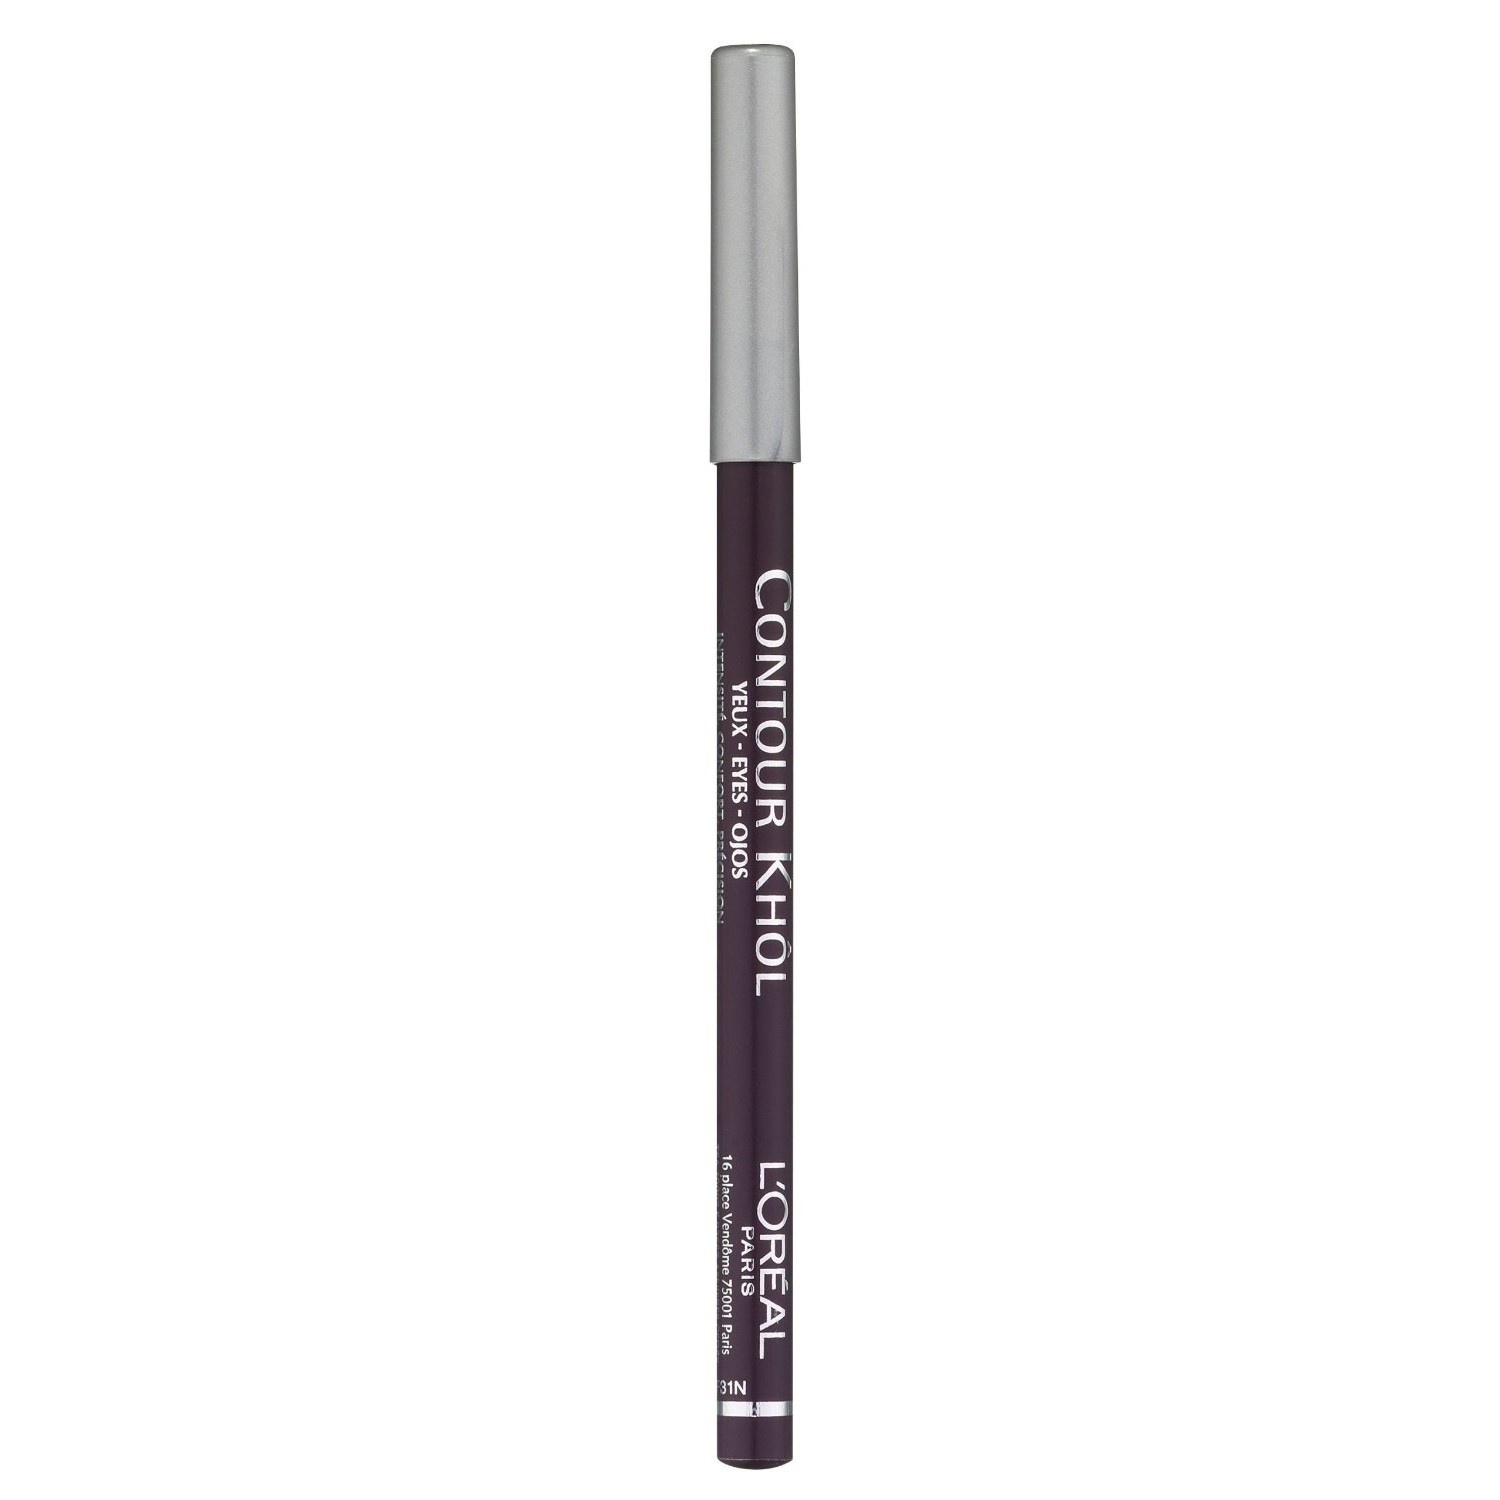 L'Oreal Contour Khol Eyeliner Pencil - 155 Inki Violet